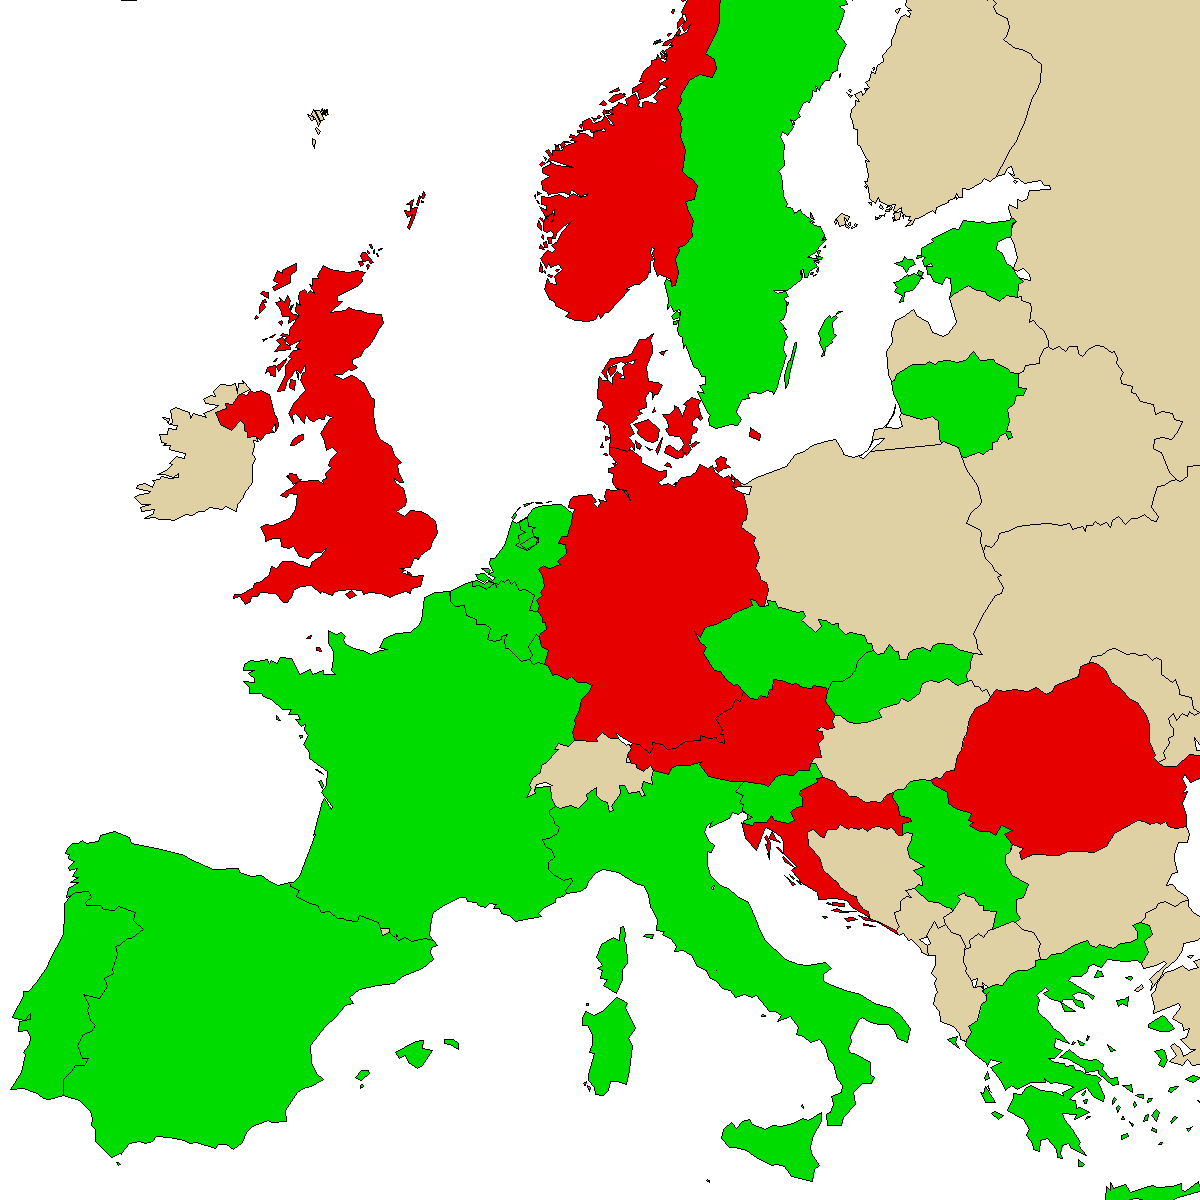 mapa de información legal para nuestro producto 3MMA, verde son países sin prohibición, rojo con prohibición, gris se desconoce